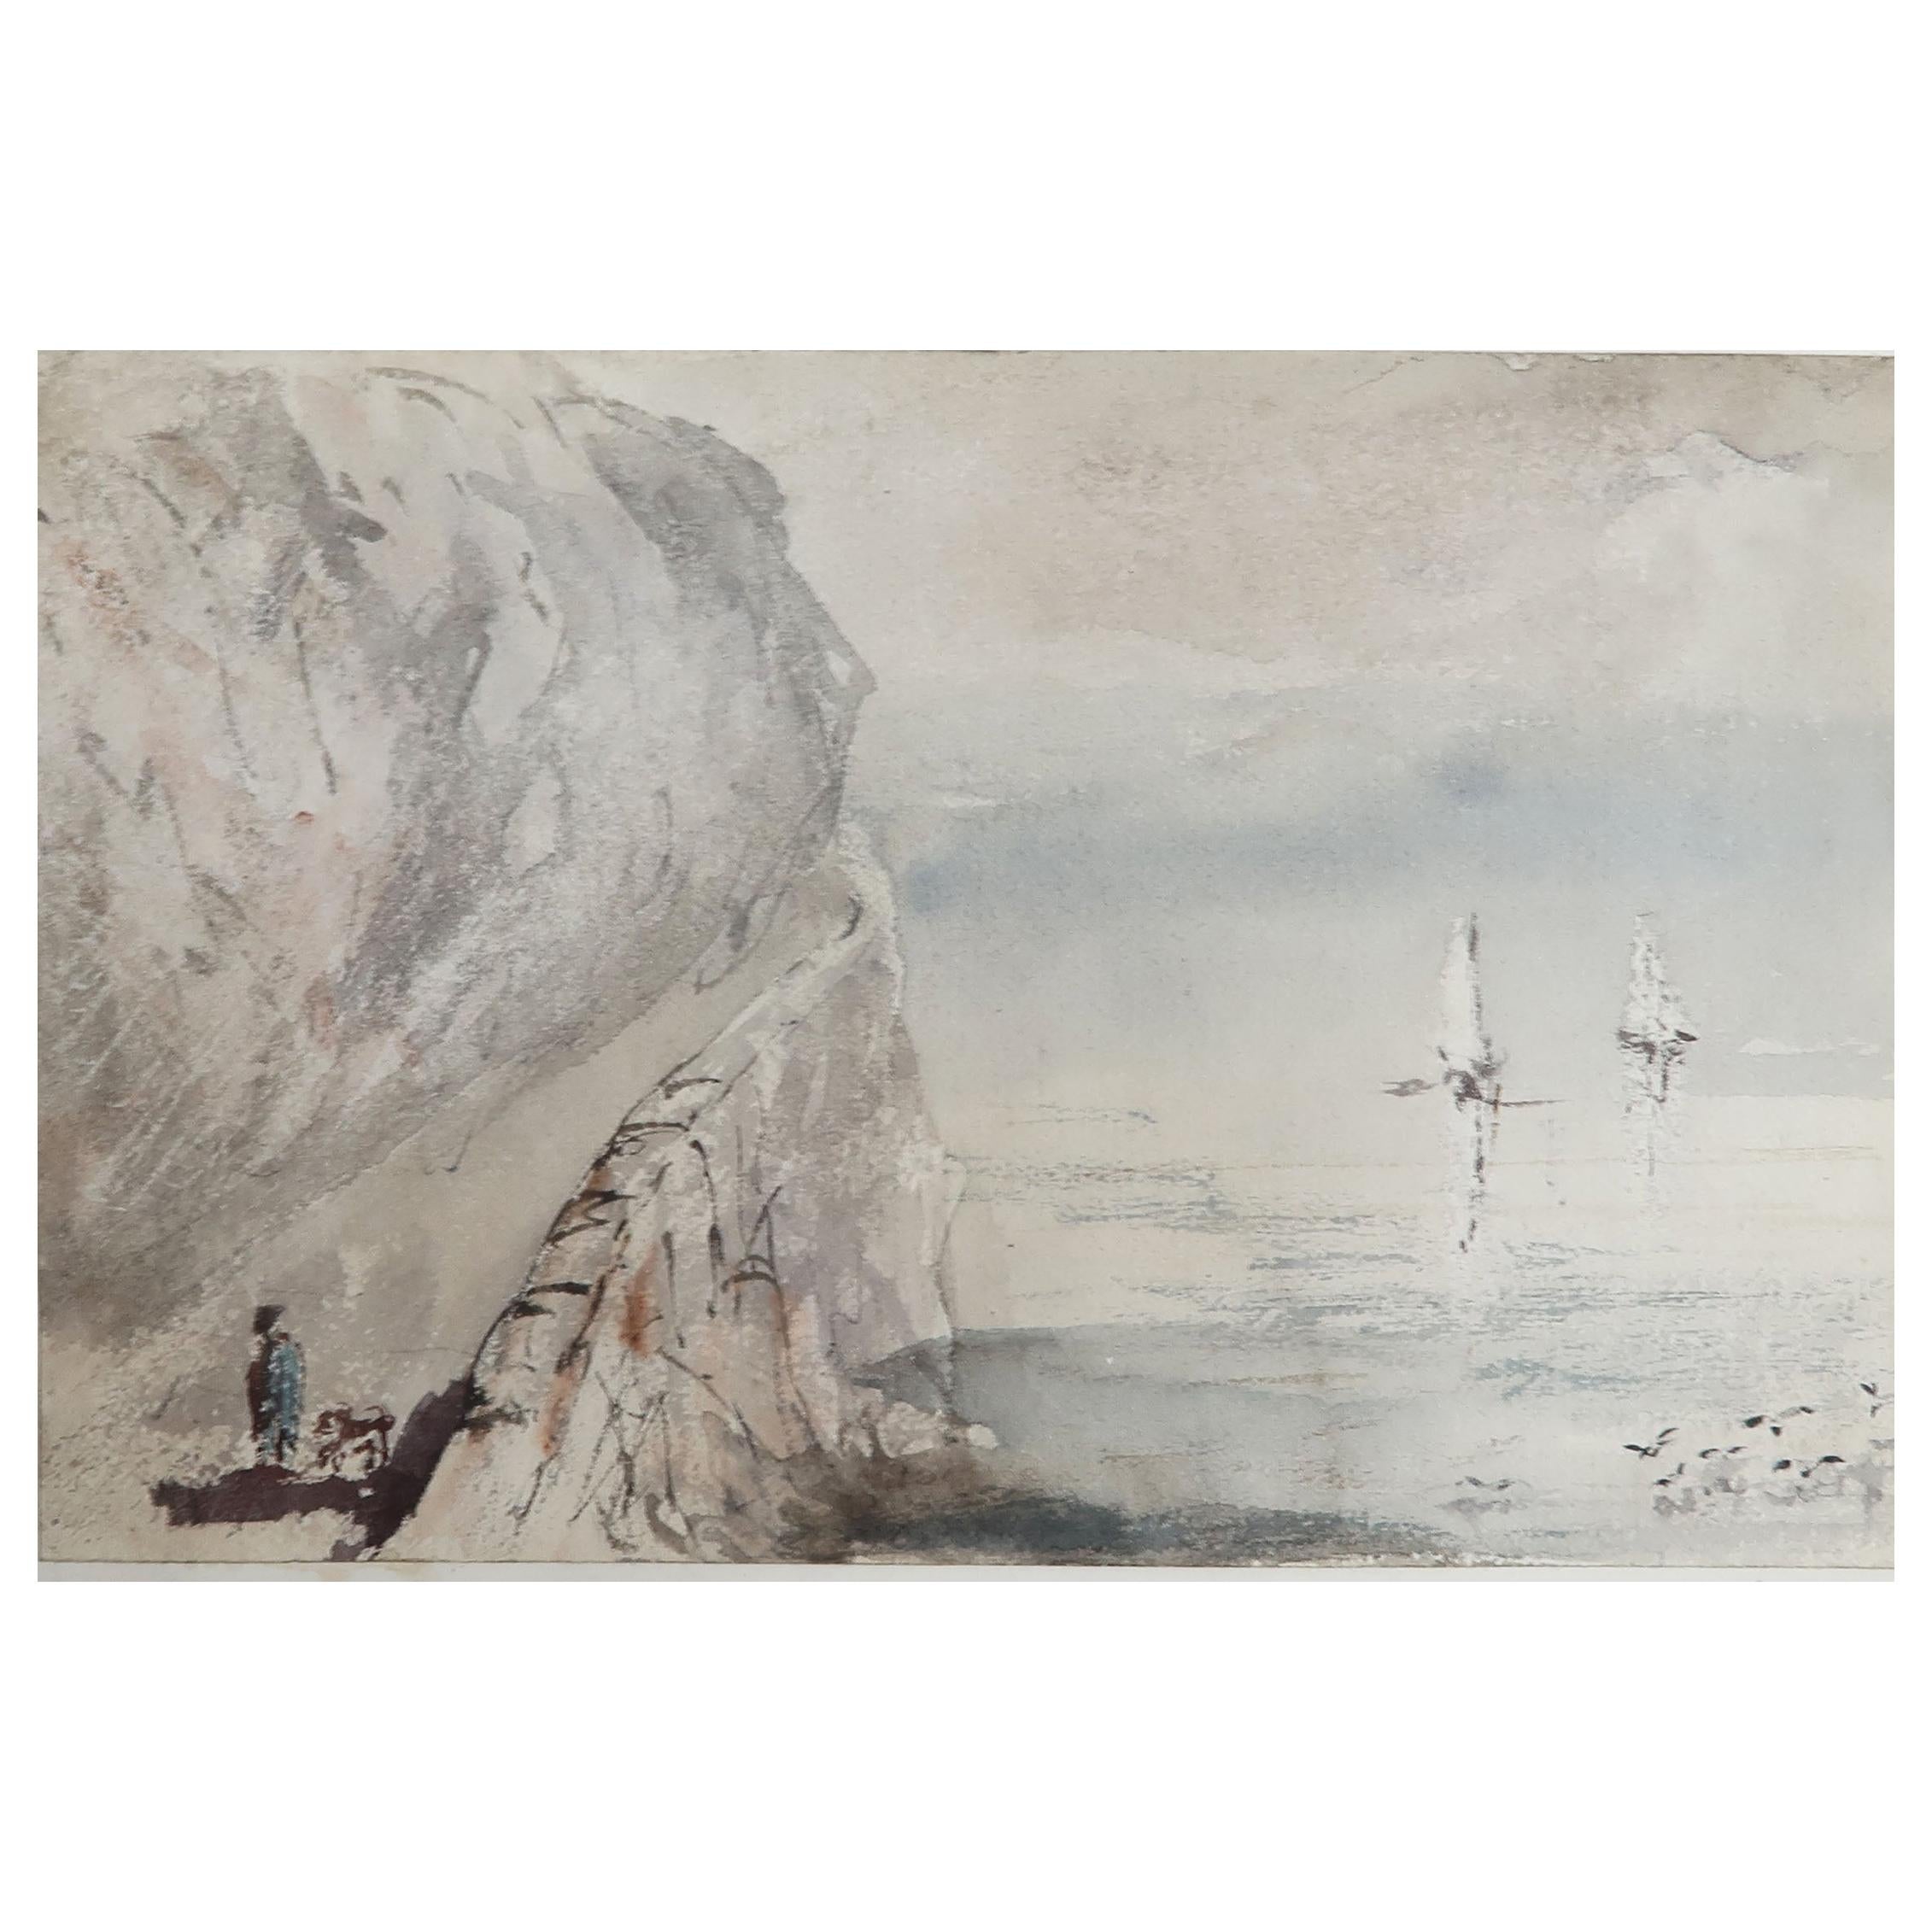 Aquarell von Penmaenmawr, Nordwales, von Robert Hindmarsh Grundy, um 1850